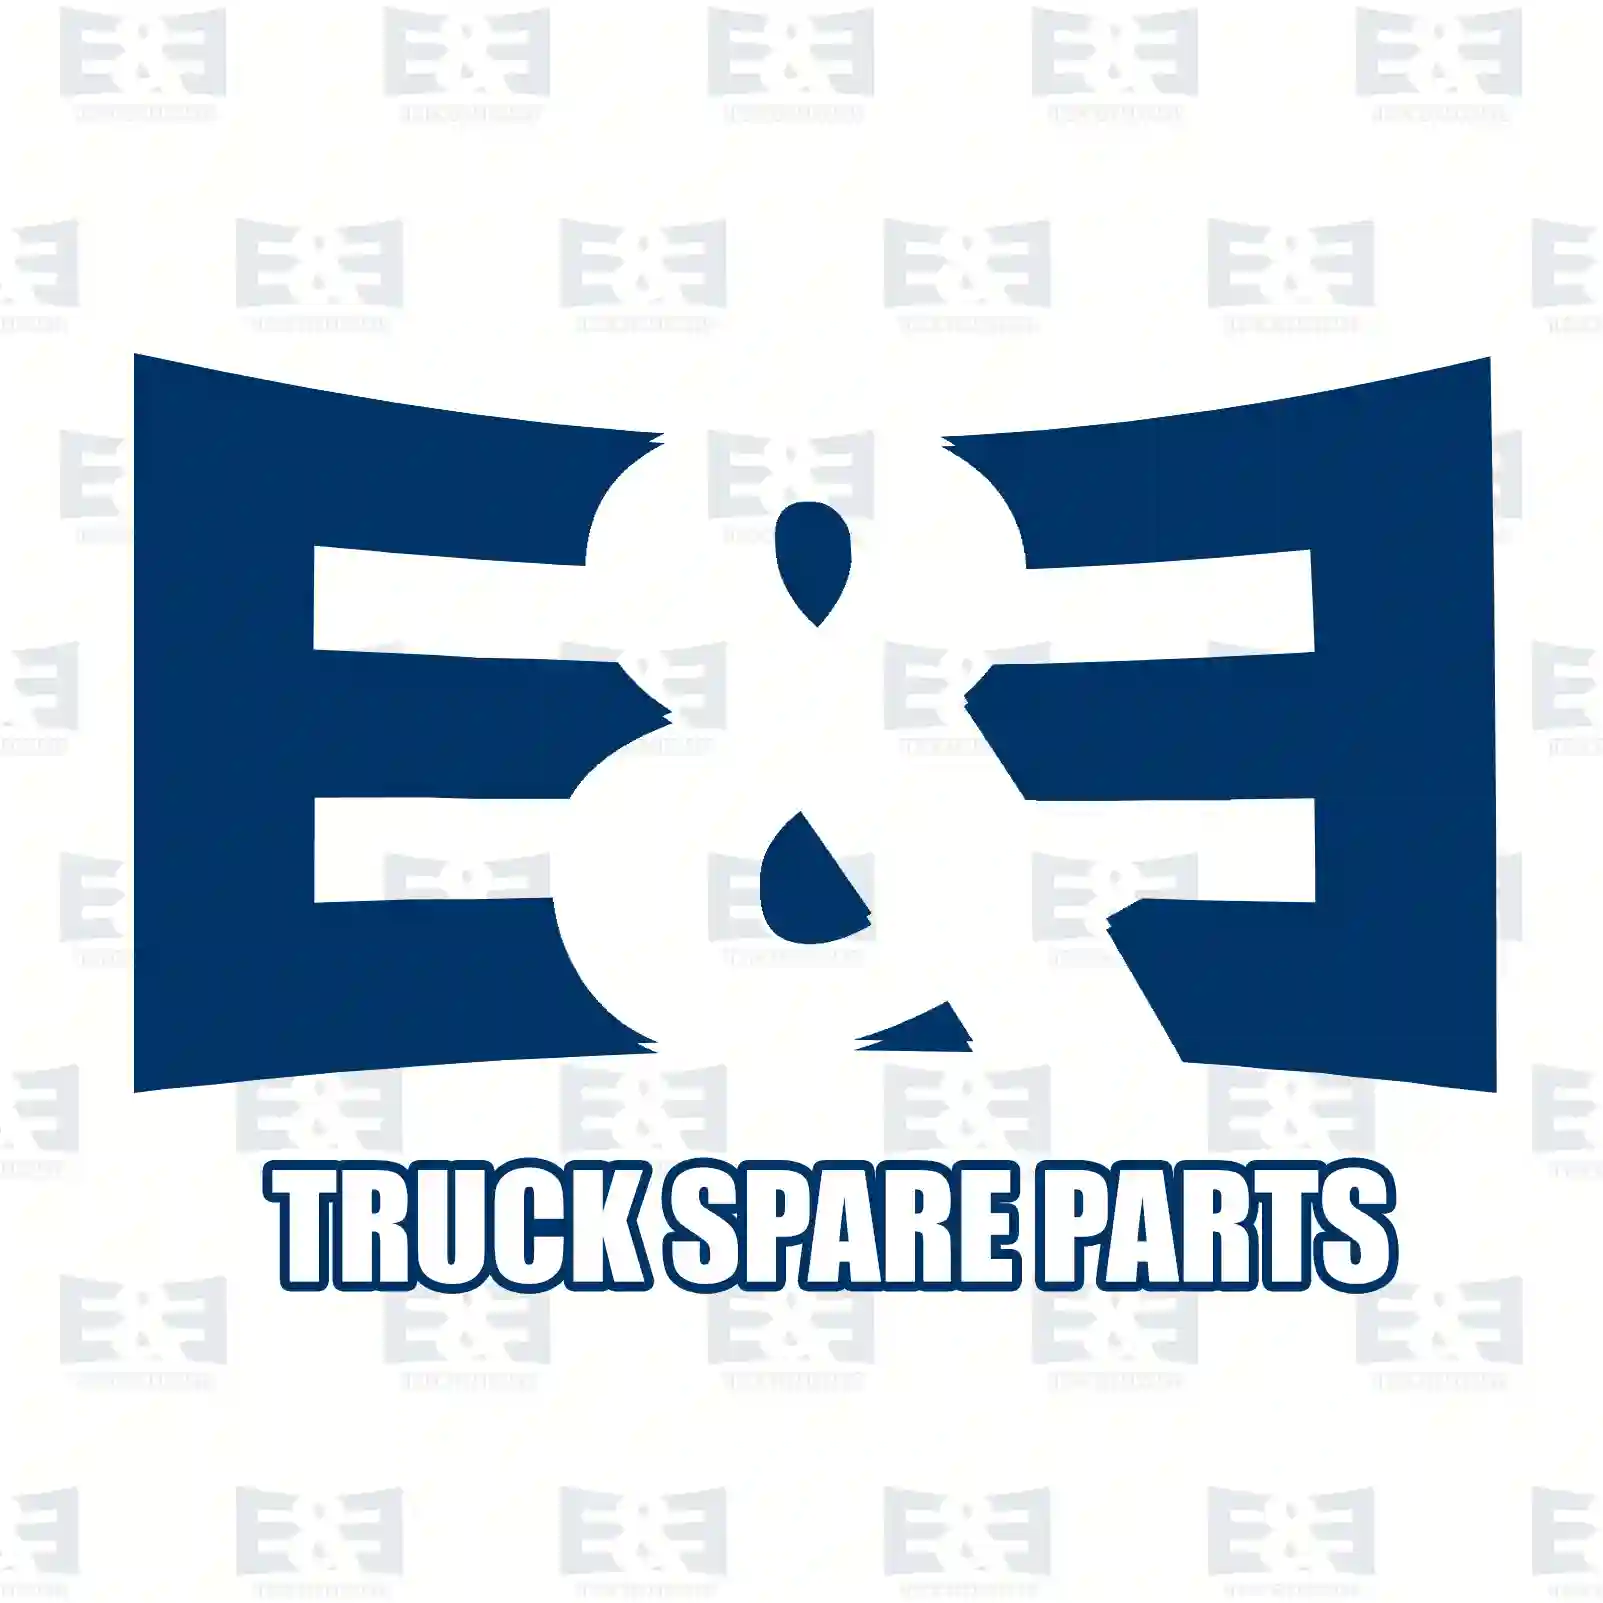 V-belt, 2E2286372, 04788552, 04788551, 04788552, 4788551, 4788552, 98473699, 06580430143, 06580432143, 06580721431, 06580731431, 007753009534, 011001534, 5000678484 ||  2E2286372 E&E Truck Spare Parts | Truck Spare Parts, Auotomotive Spare Parts V-belt, 2E2286372, 04788552, 04788551, 04788552, 4788551, 4788552, 98473699, 06580430143, 06580432143, 06580721431, 06580731431, 007753009534, 011001534, 5000678484 ||  2E2286372 E&E Truck Spare Parts | Truck Spare Parts, Auotomotive Spare Parts